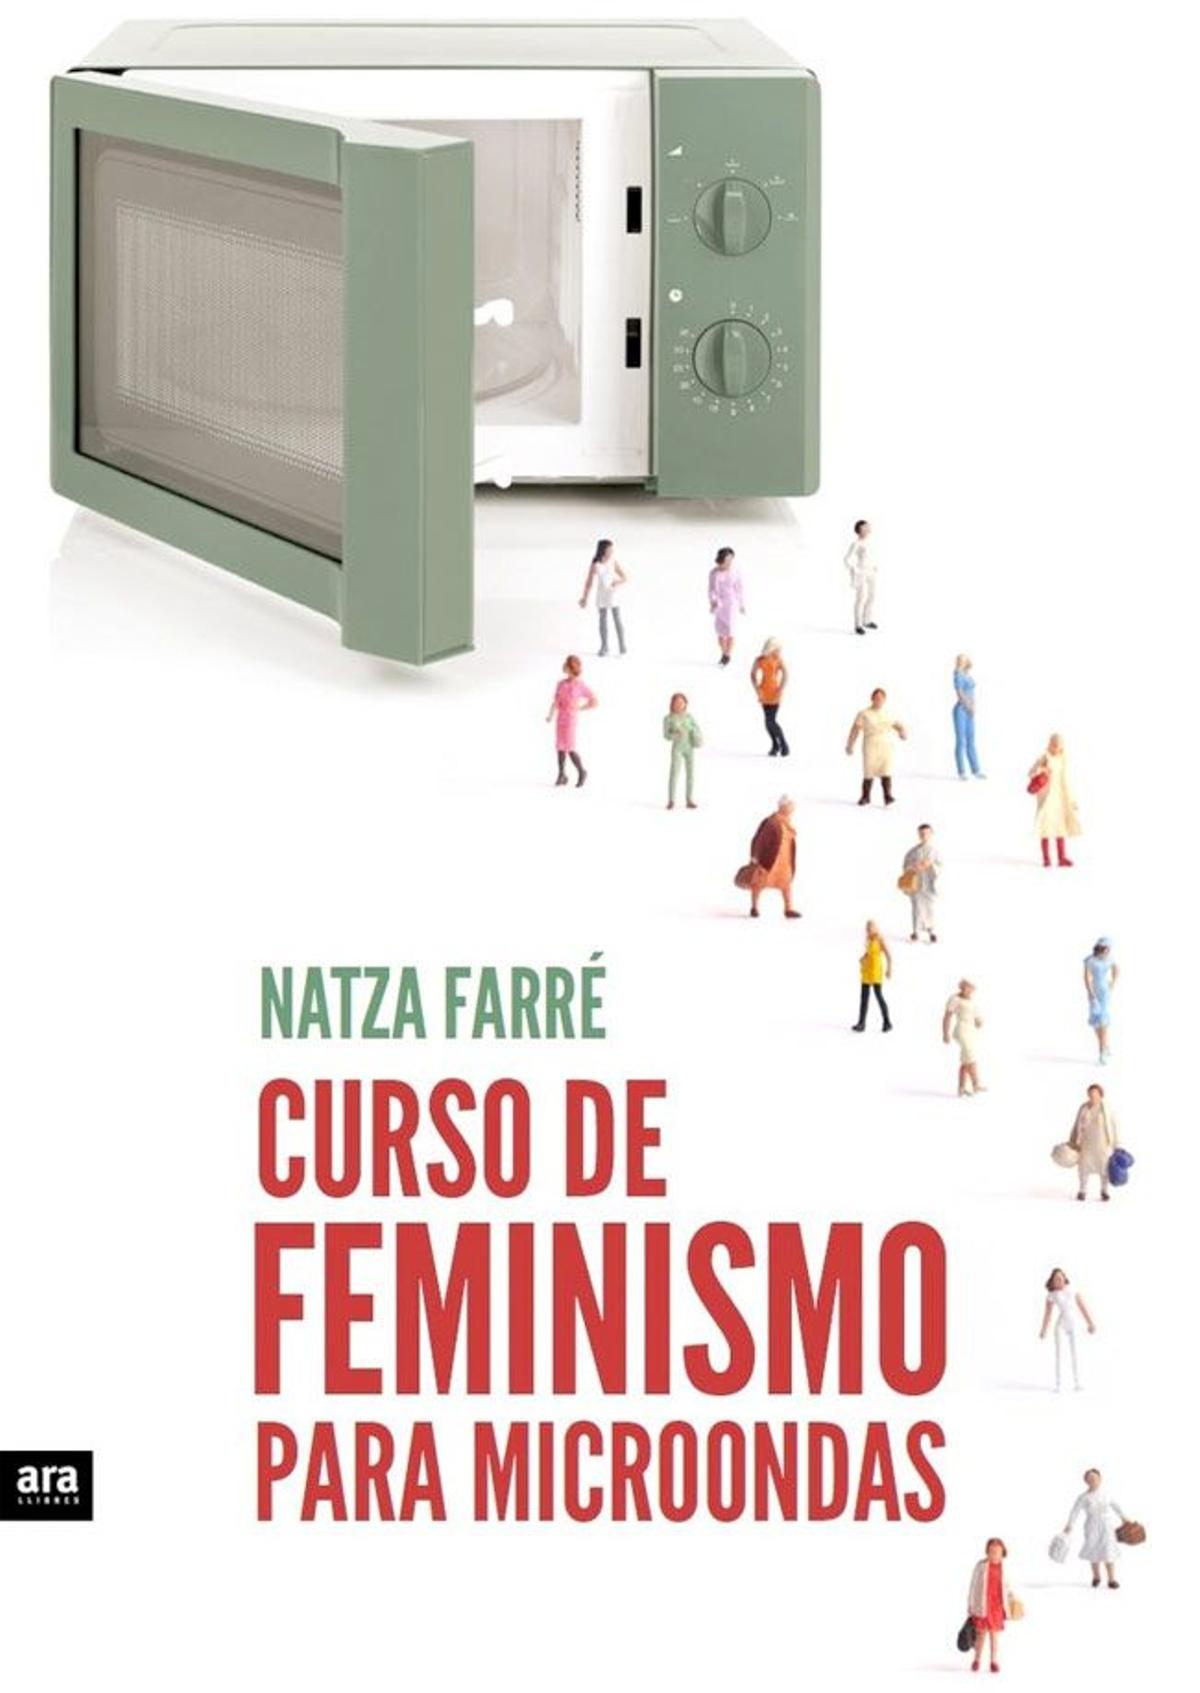 Libro 'Curso de Feminismo para microondas', de Natza Farré